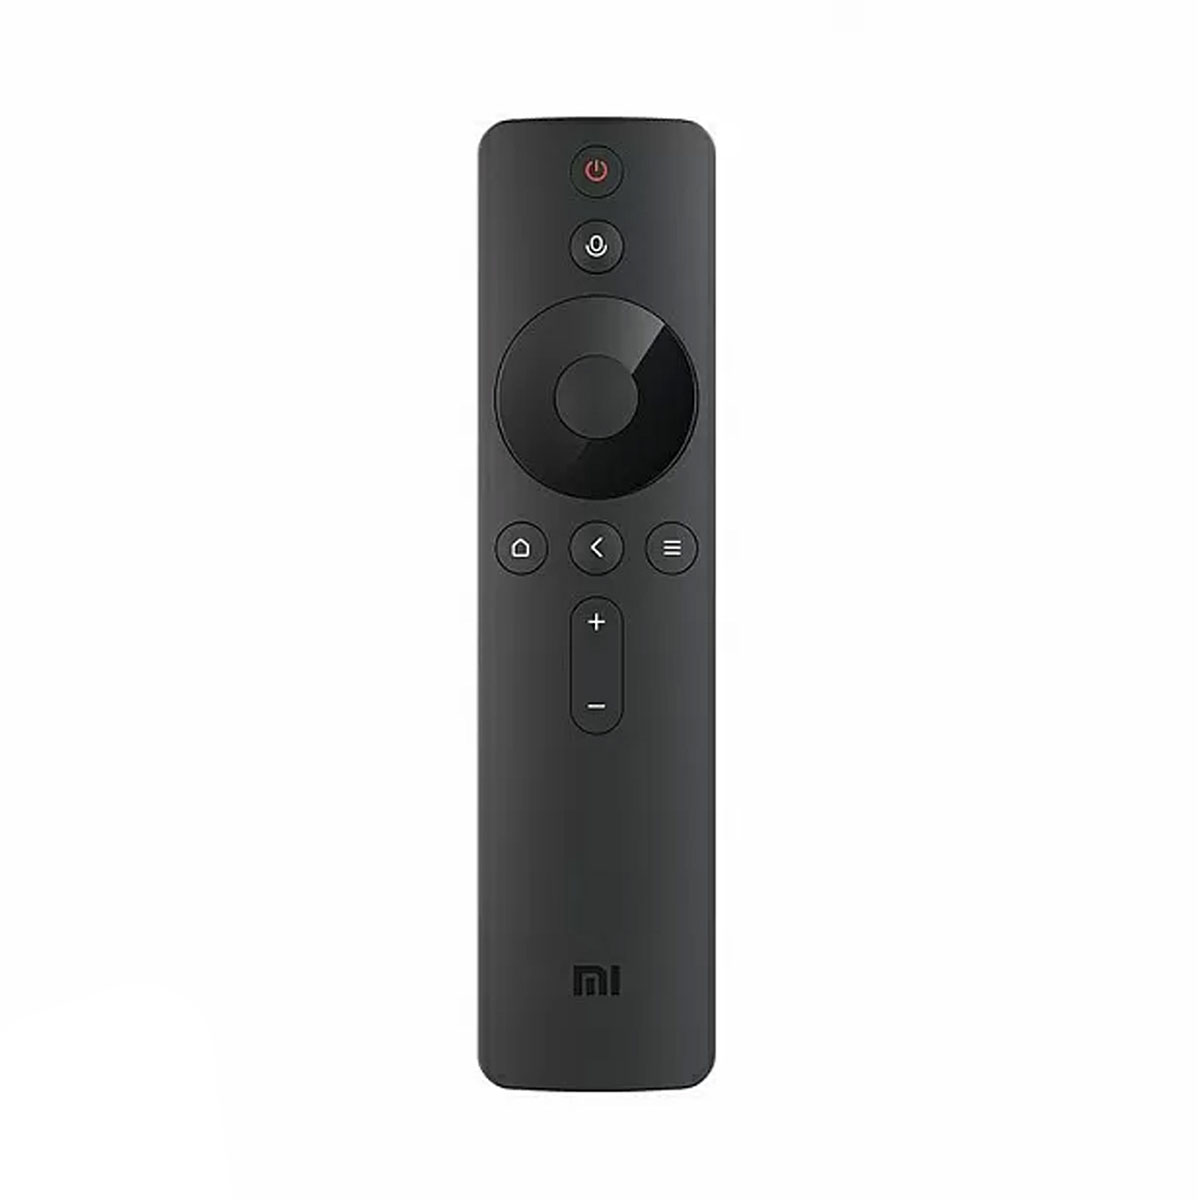 Пульт ДУ для XIAOMI Mi Bluetooth Touch Voice Remote Control с голосовым контроллером, цвет черный.